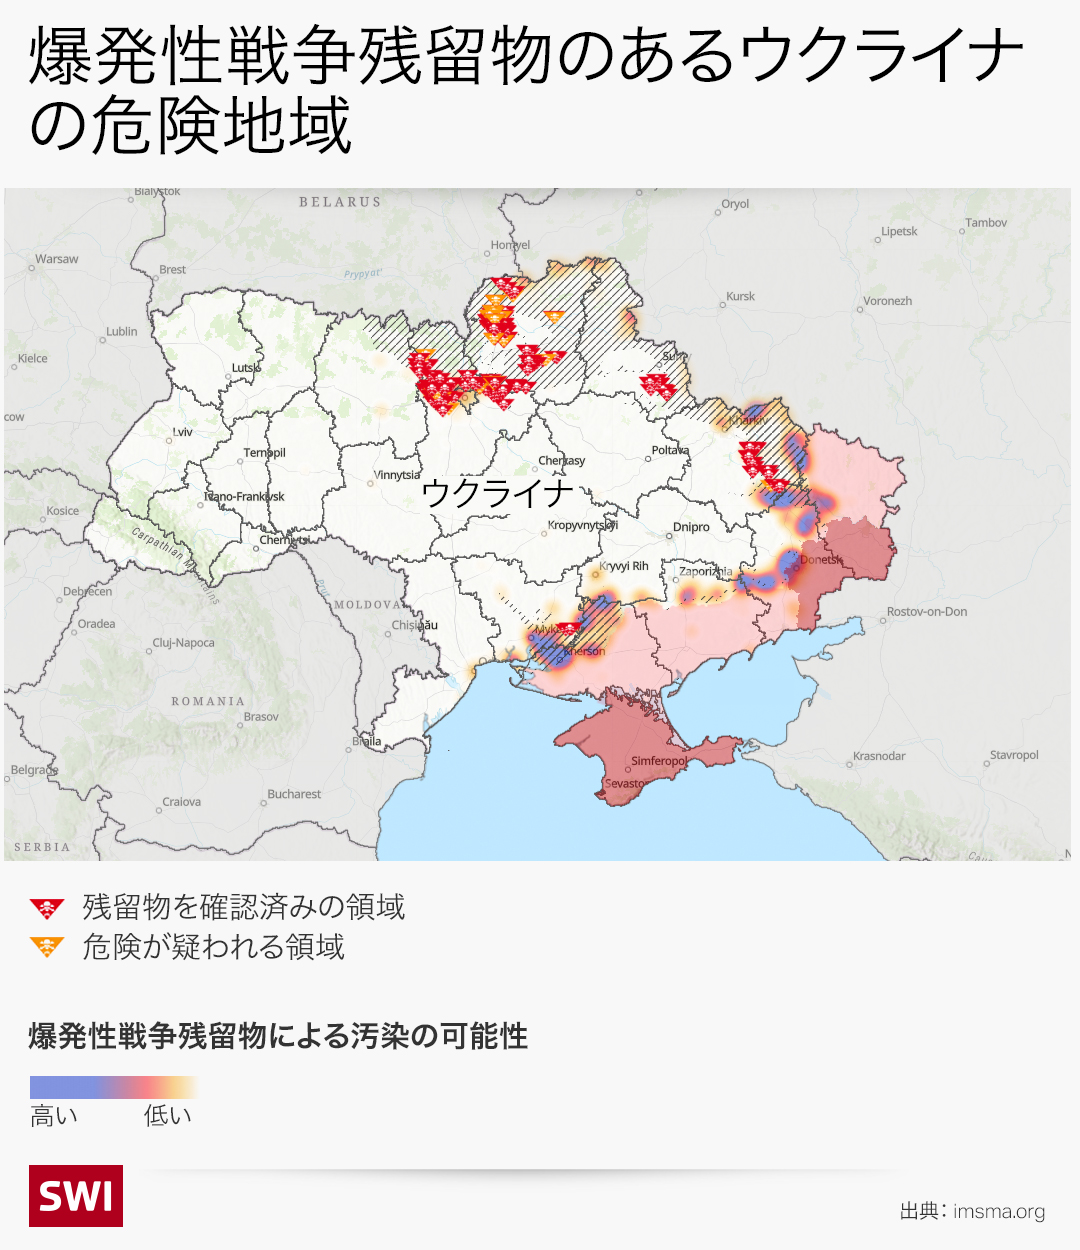 爆発物で汚染されたウクライナの危険地域を示した地図